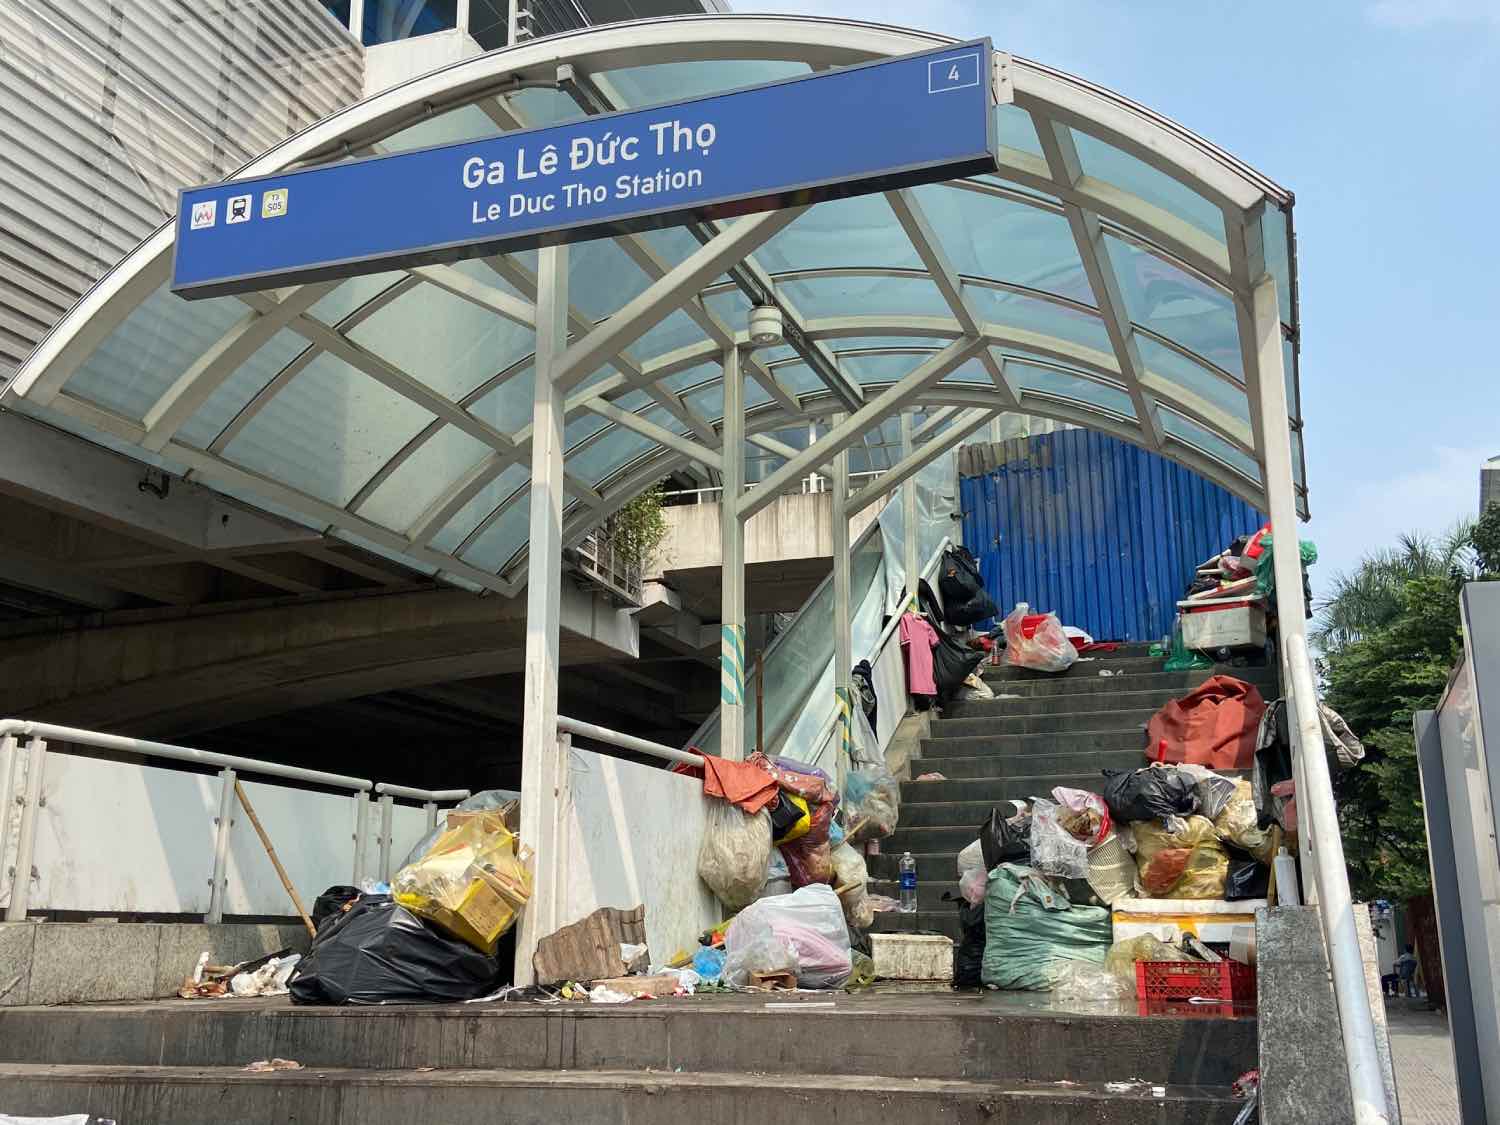 Metro Nhổn - ga Hà Nội chưa đi vào hoạt động, rác thải đã ngập ngụa lối đi